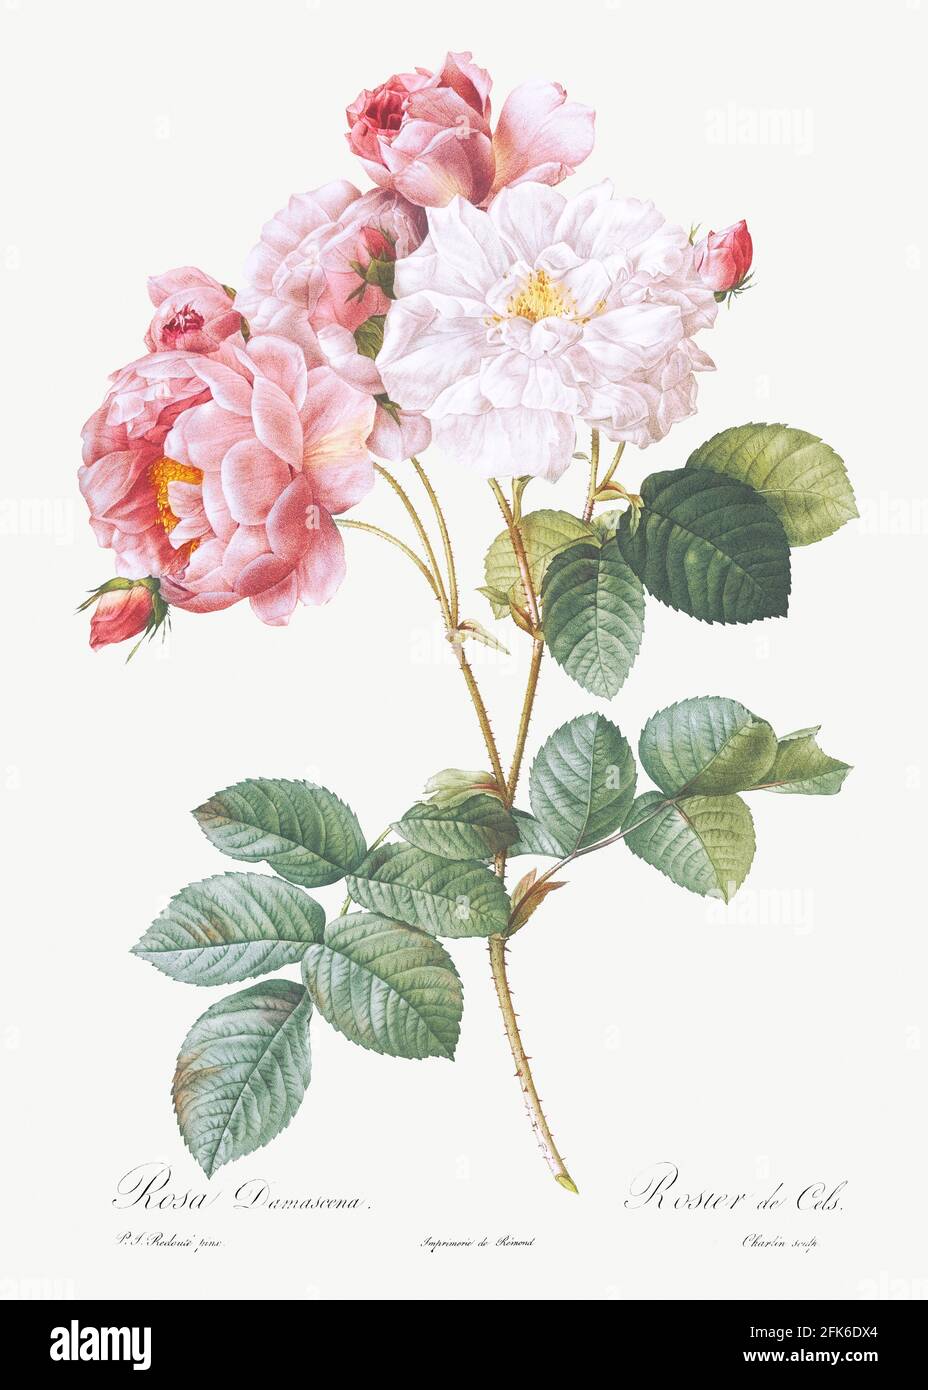 Rosa × damascena, rosebush (Rosa damascena) des Roses (1817&ndash;1824) par Pierre-Joseph Redit. Original de la Bibliothèque du Congrès. Digitall Banque D'Images